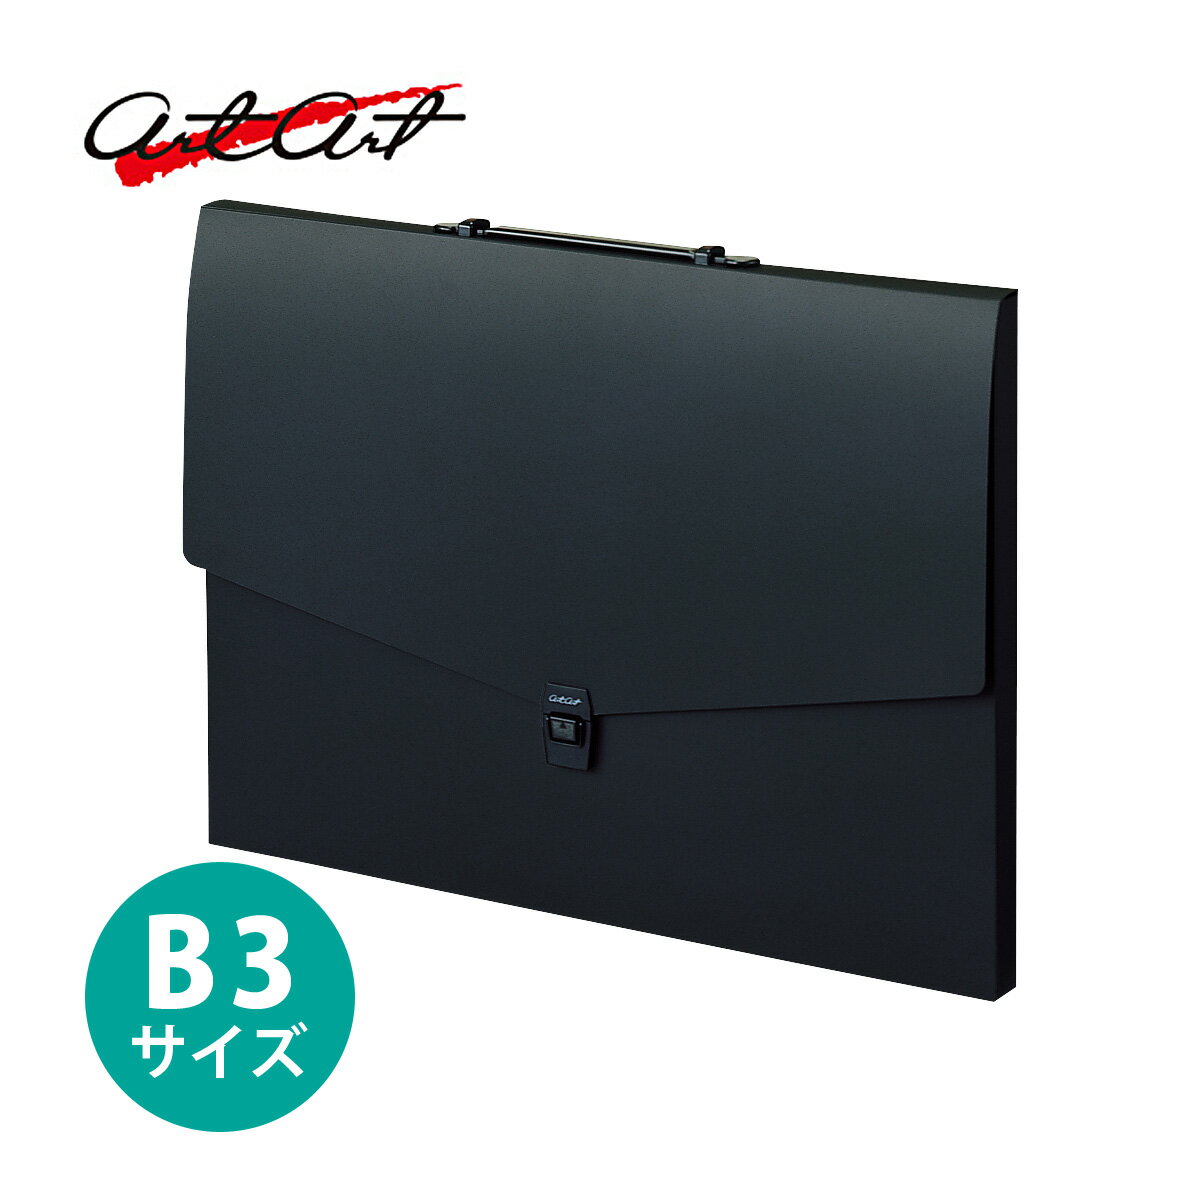 アルタートケース フラットタイプ B3 ブラック ブラック 耐荷重5kg セキセイ バッグ 作品 美術 収納 図面 小物 文具 ビジネス 学生 携帯 持ち運び 丈夫 日本製